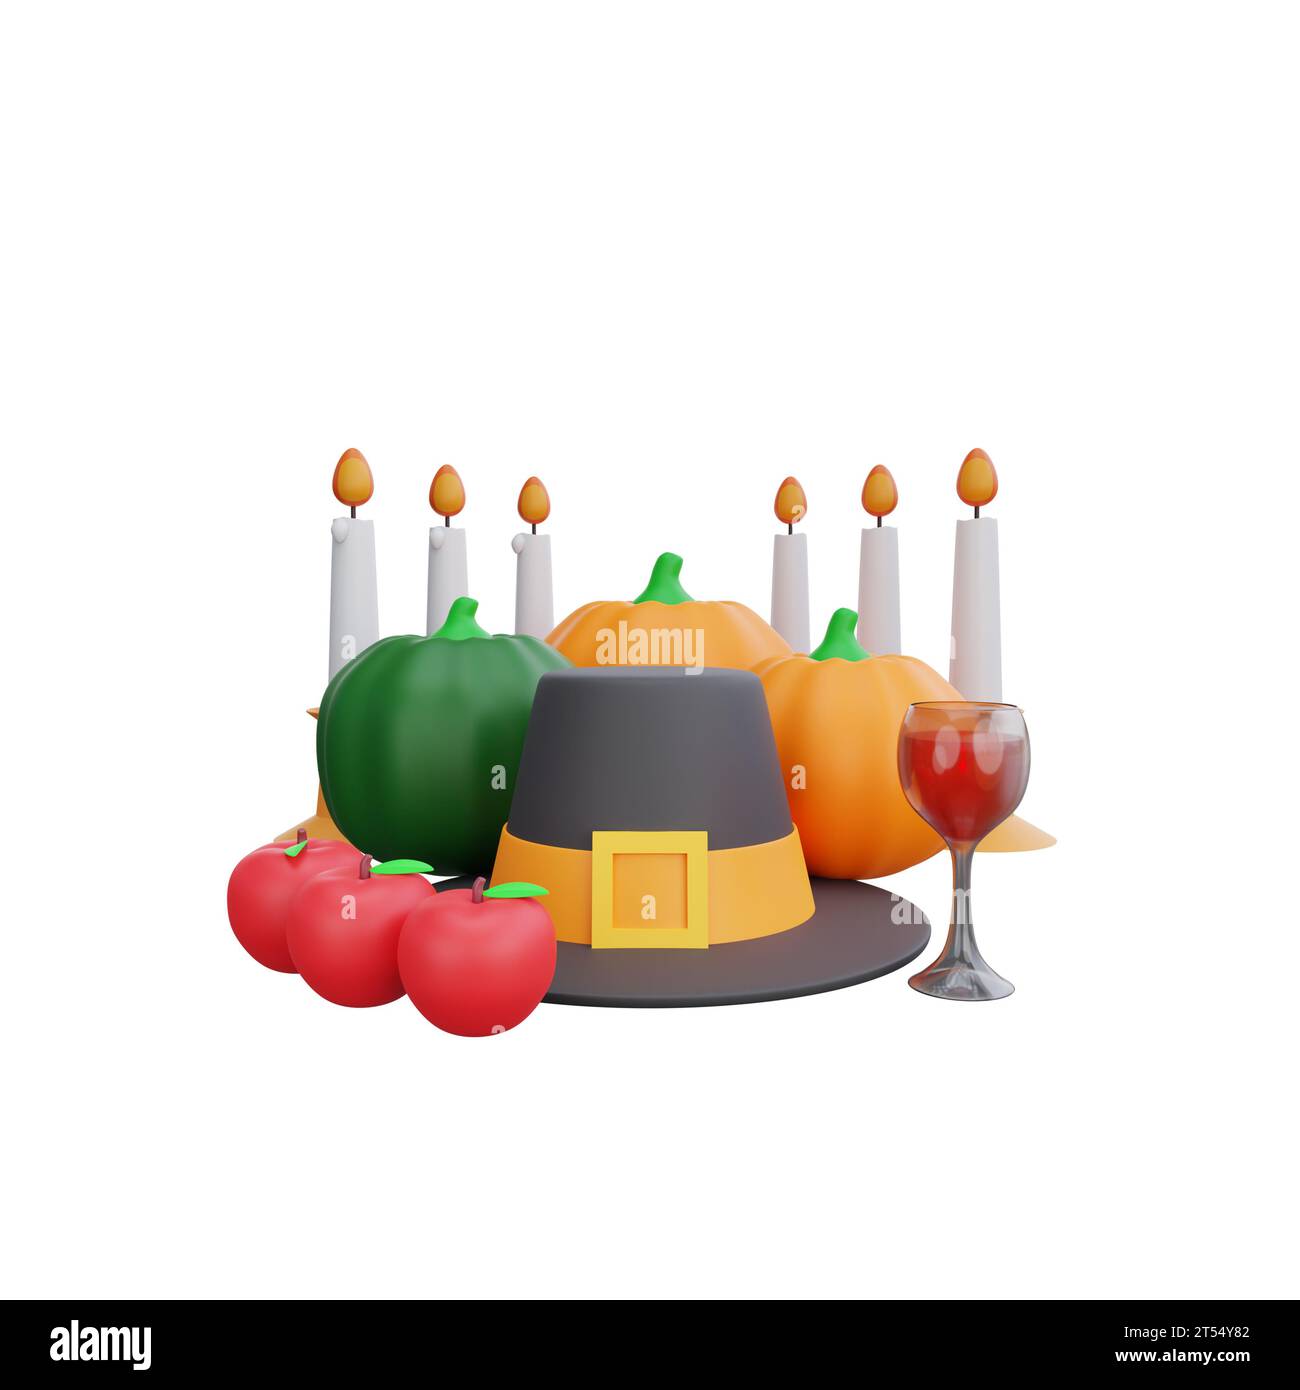 3D-Rendering eines Thanksgiving-Herzstücks mit Pilgerhut, Kürbissen, Kerzen und Äpfeln Stockfoto